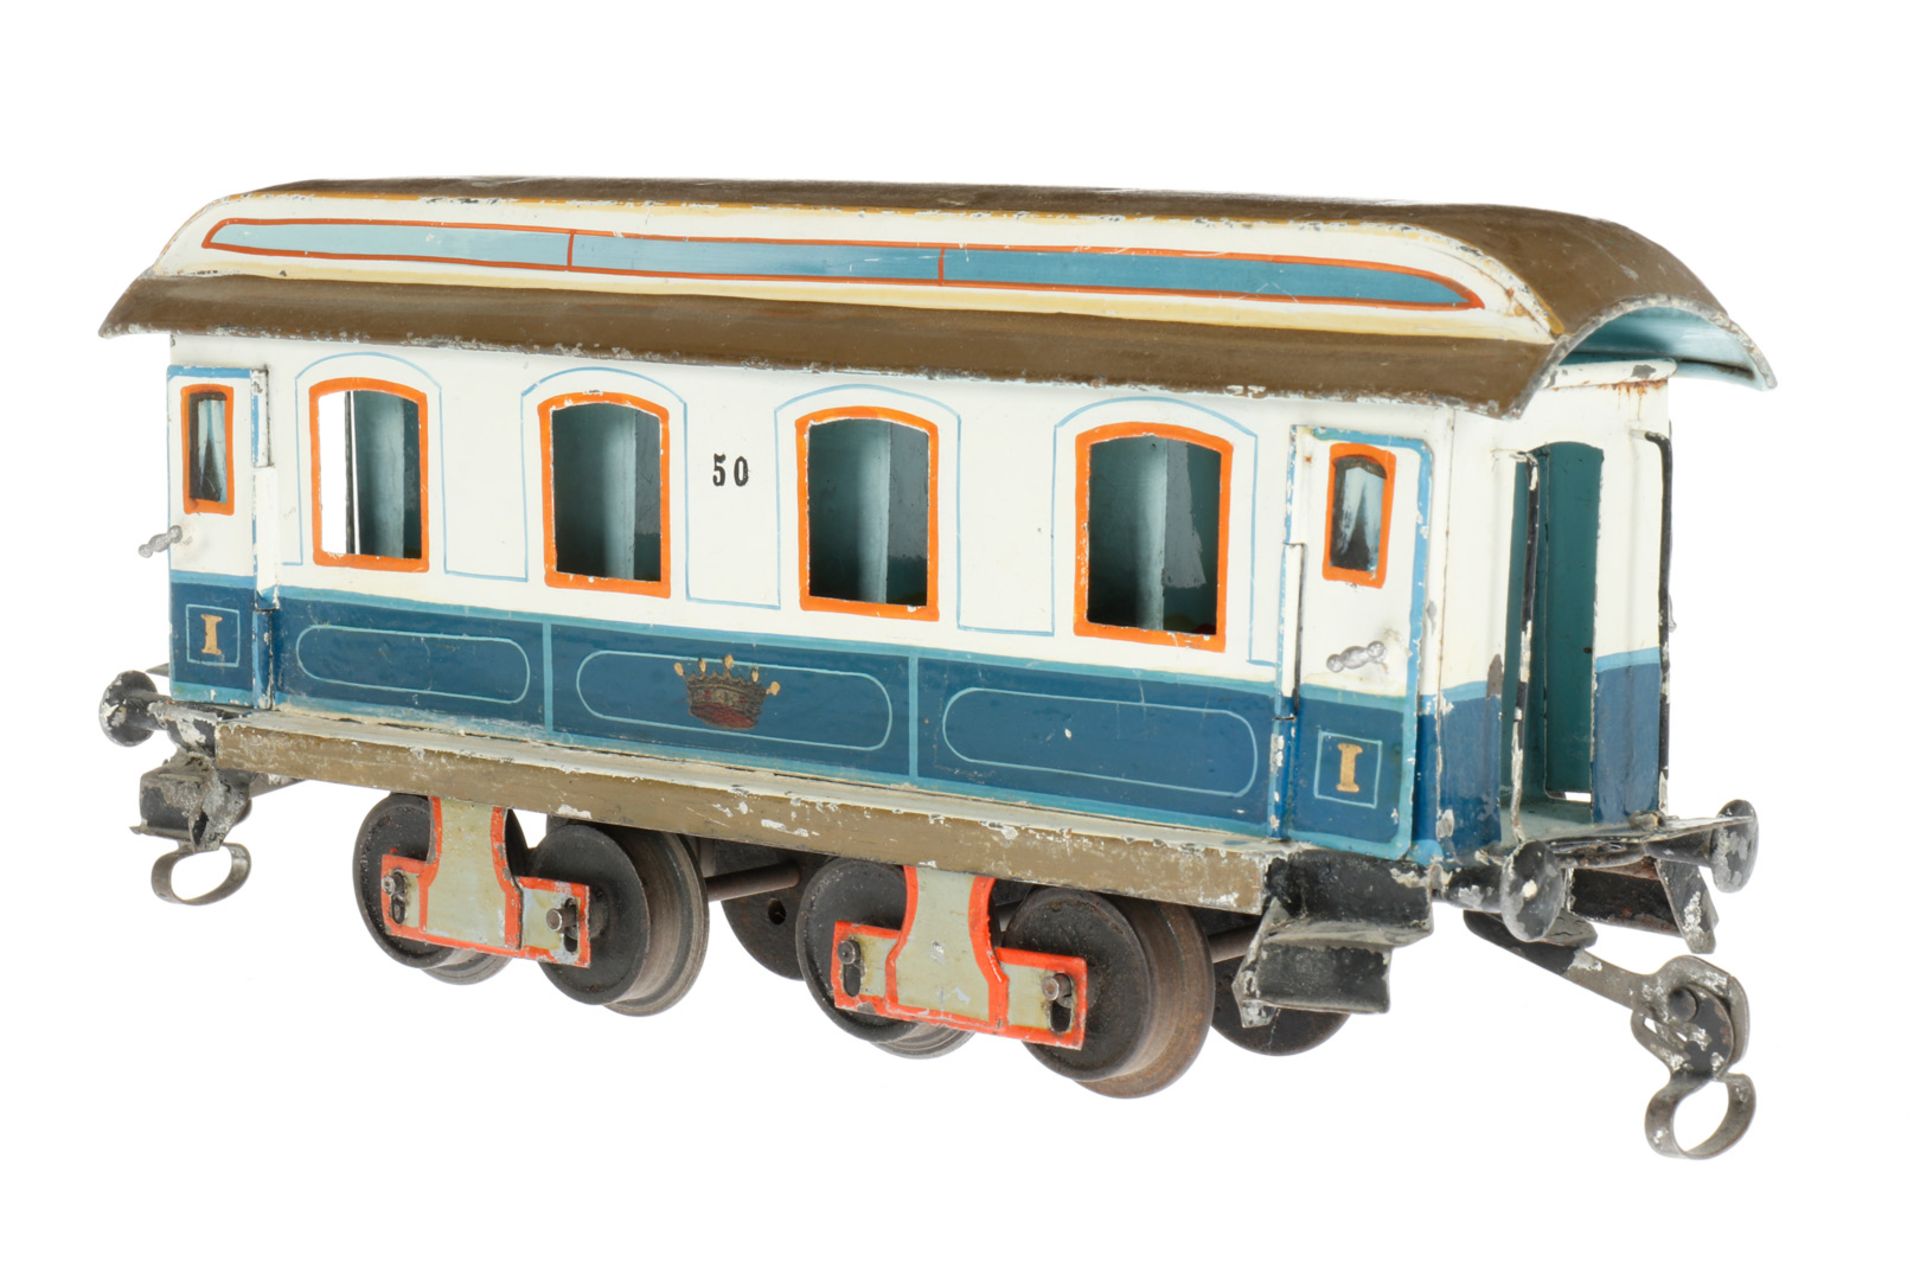 Märklin Personenwagen “50“ 1841 K, S 1, uralt, blau/weiß, HL, mit Inneneinrichtung, 4 AT und - Bild 2 aus 6